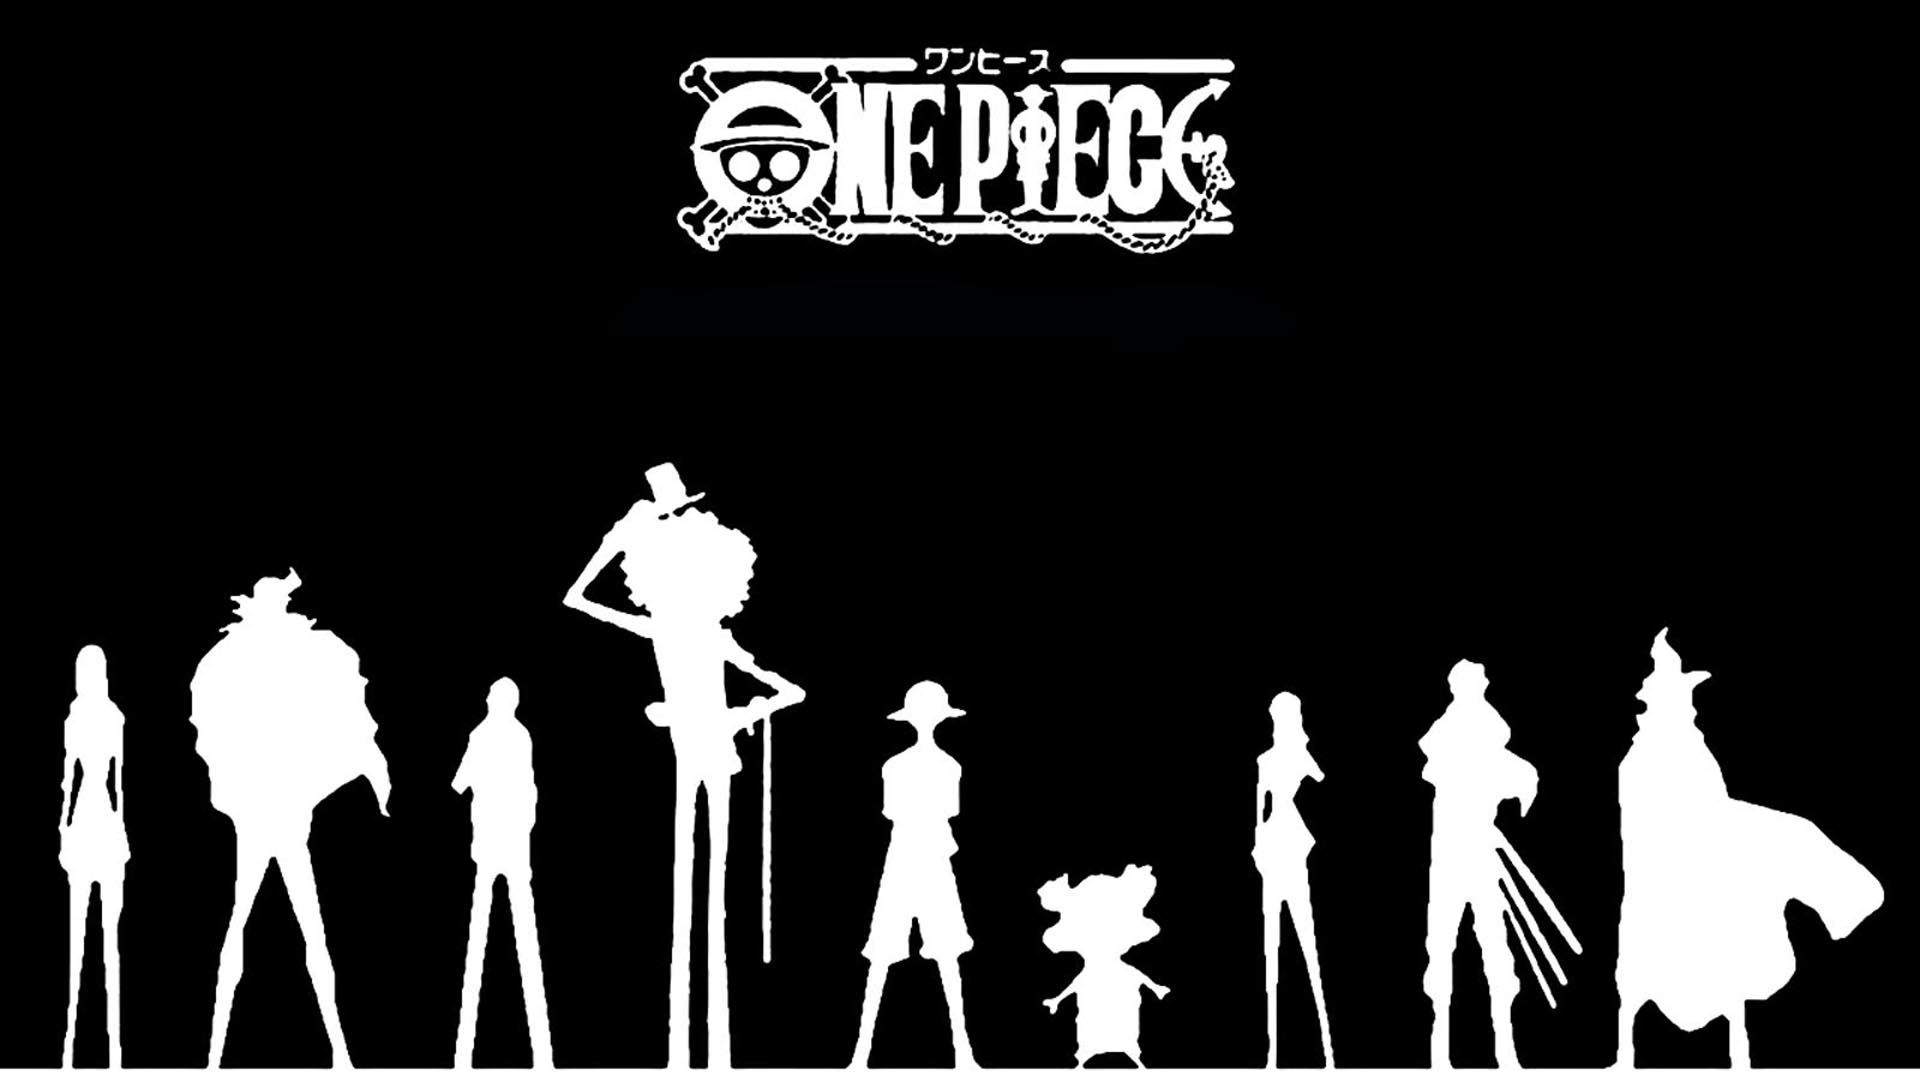 One Piece Black And White Wallpapers: Trải nghiệm những màn hình nền đơn giản nhưng đầy ấn tượng với bộ sưu tập hình nền One Piece Black And White. Tông màu đen trắng sang trọng và lịch lãm, giúp tạo ra không gian làm việc và giải trí hài hòa.